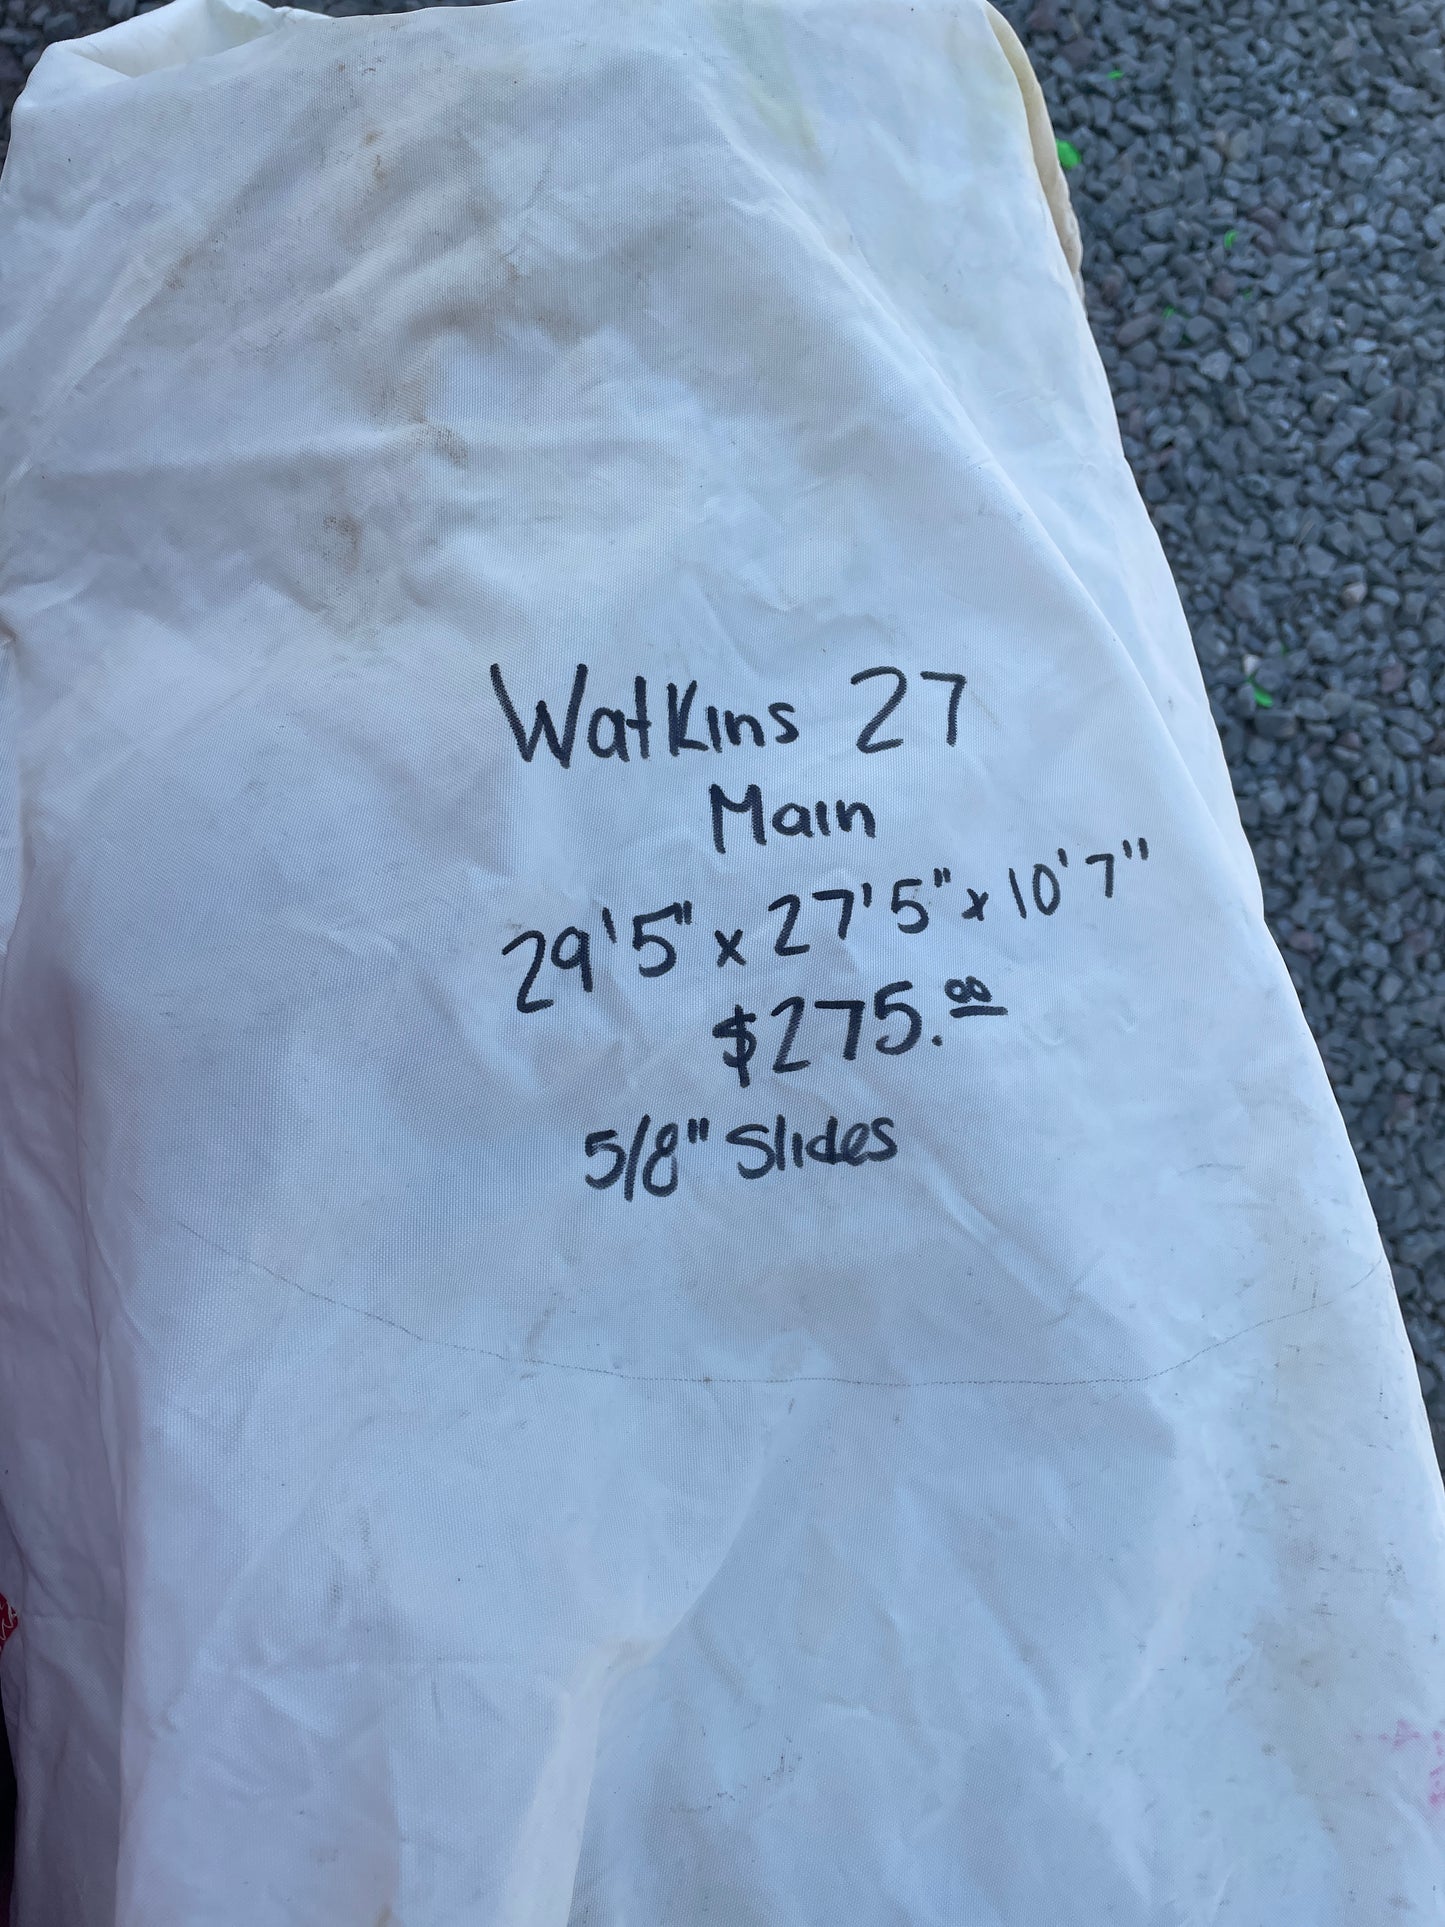 Watkins 27 Mainsail- 29’5” x 27’ 5” x 10’7”